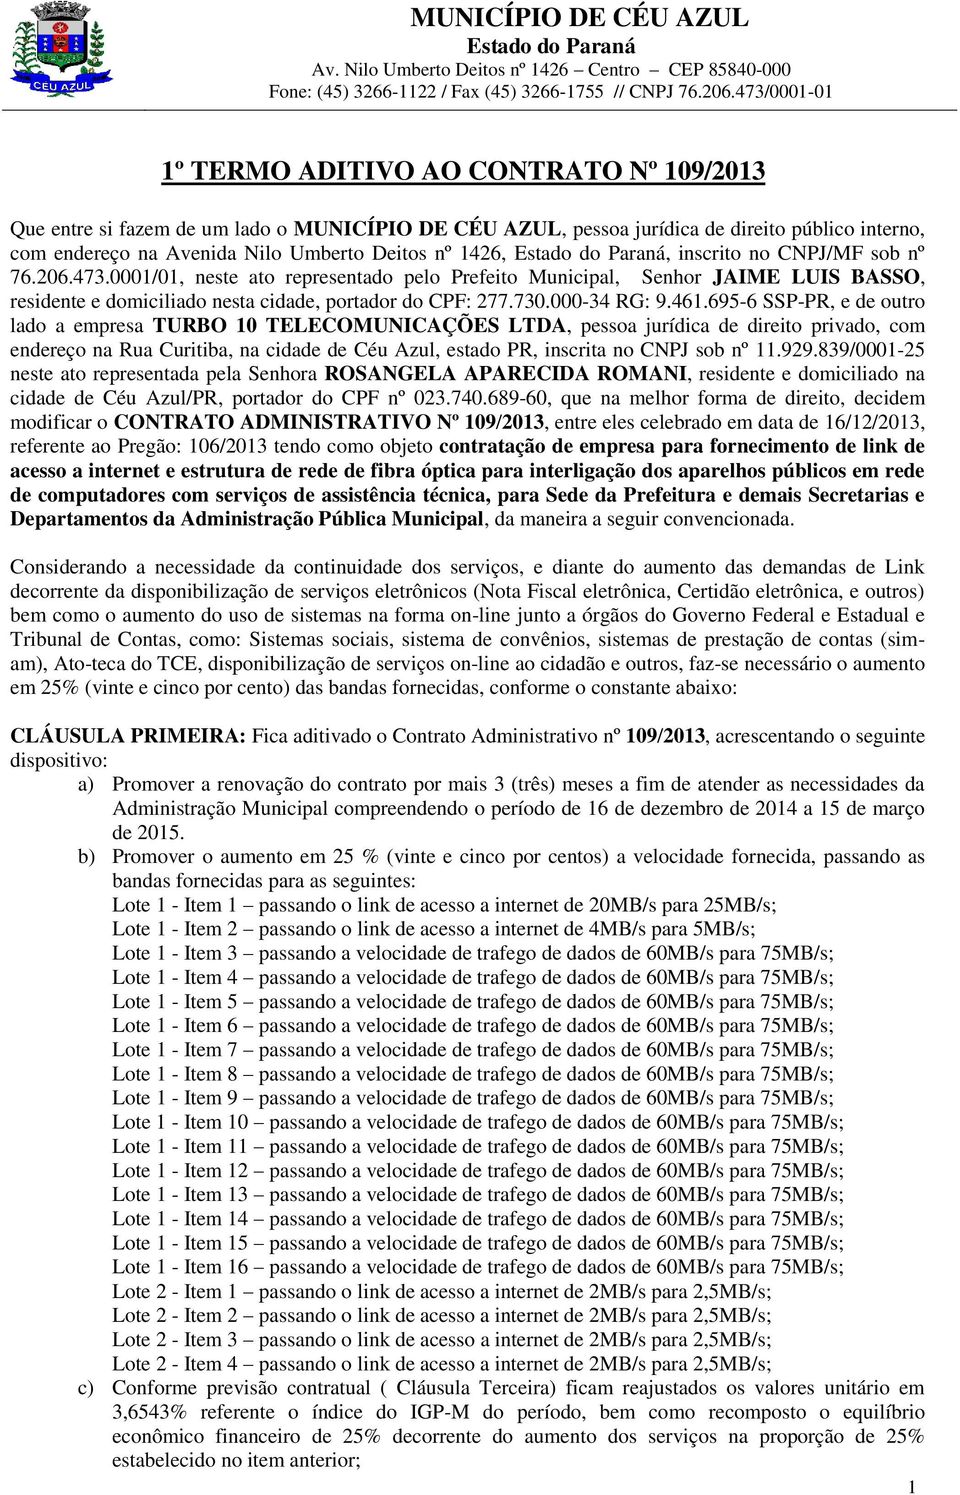 695-6 P-PR, e de outro lado a empresa TURBO 10 TELECOMUNICAÇÕE LTDA, pessoa jurídica de direito privado, com endereço na Rua Curitiba, na cidade de Céu Azul, estado PR, inscrita no CNPJ sob nº 11.929.